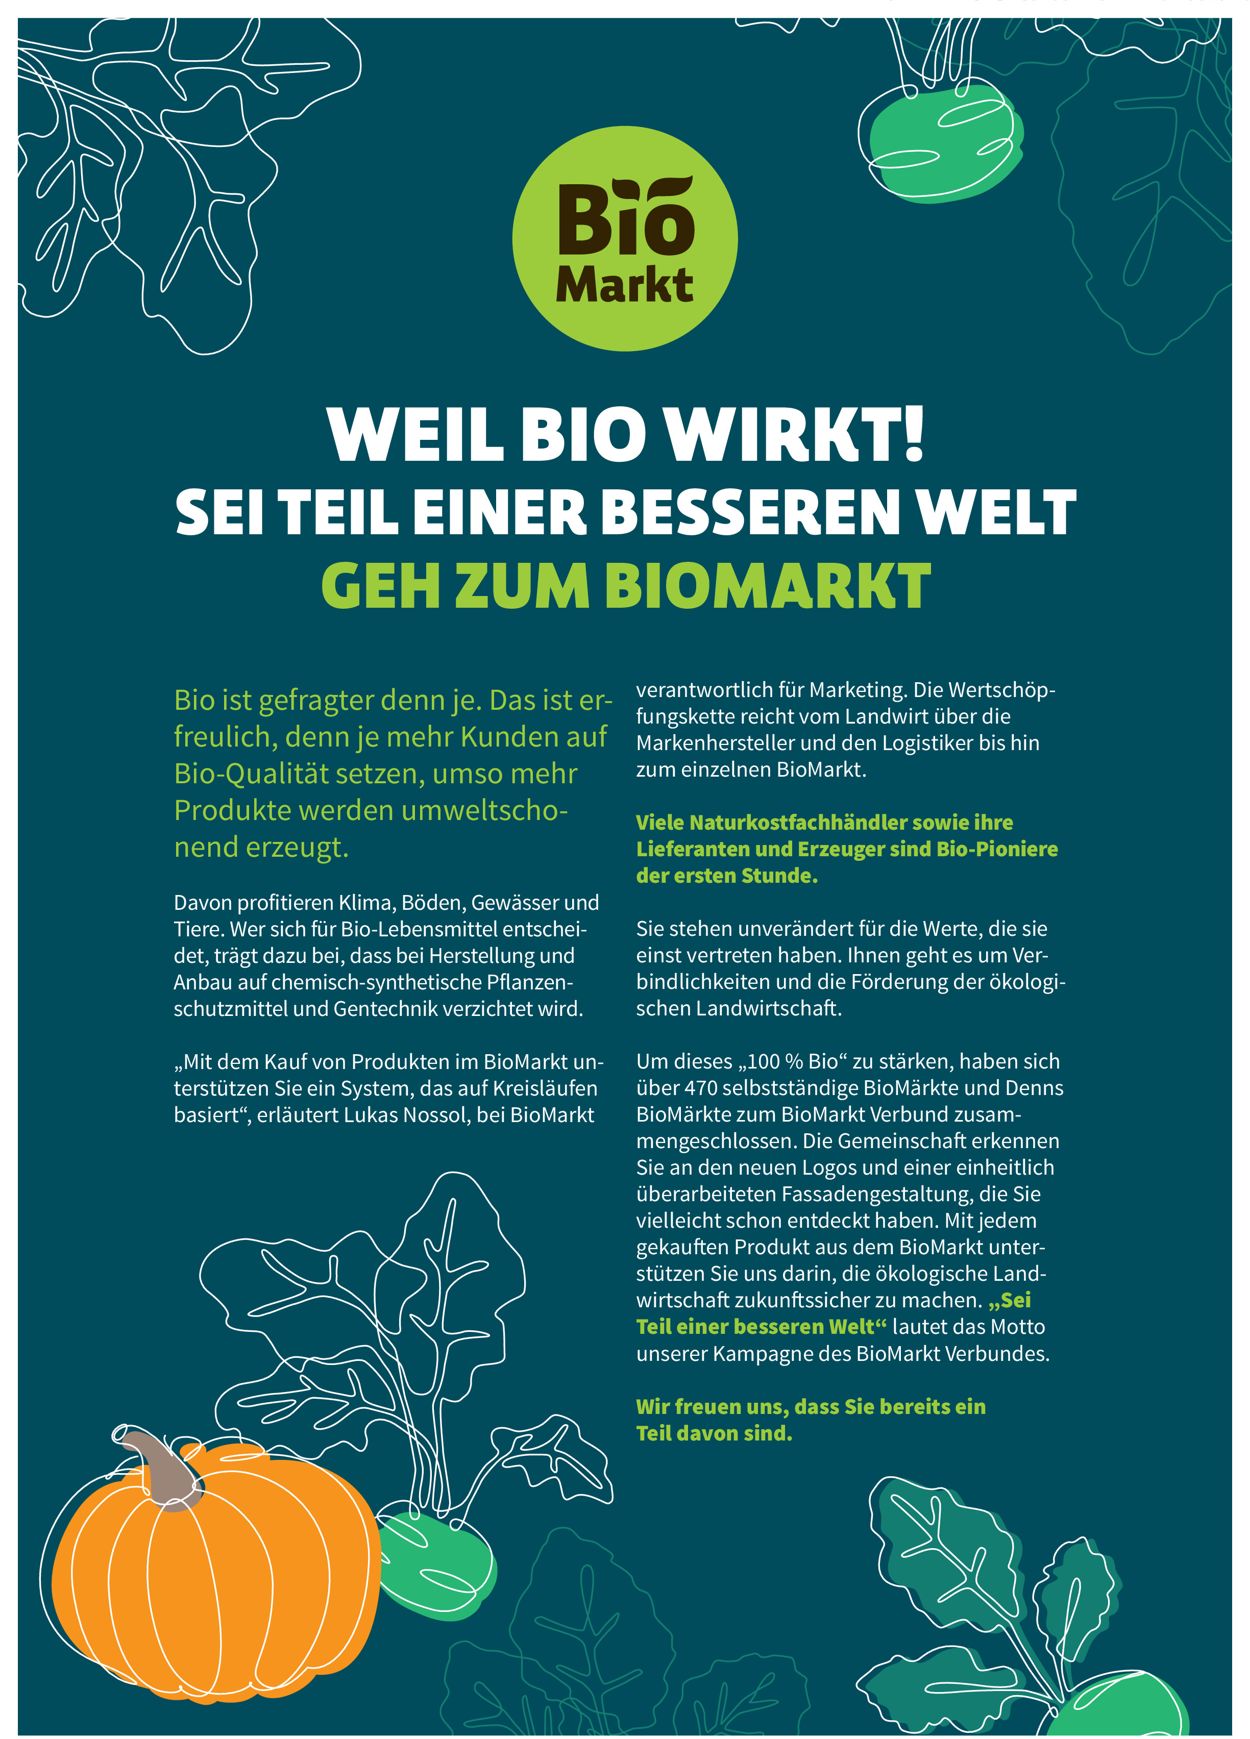 Denn's Biomarkt Prospekt ab 28.04.2021